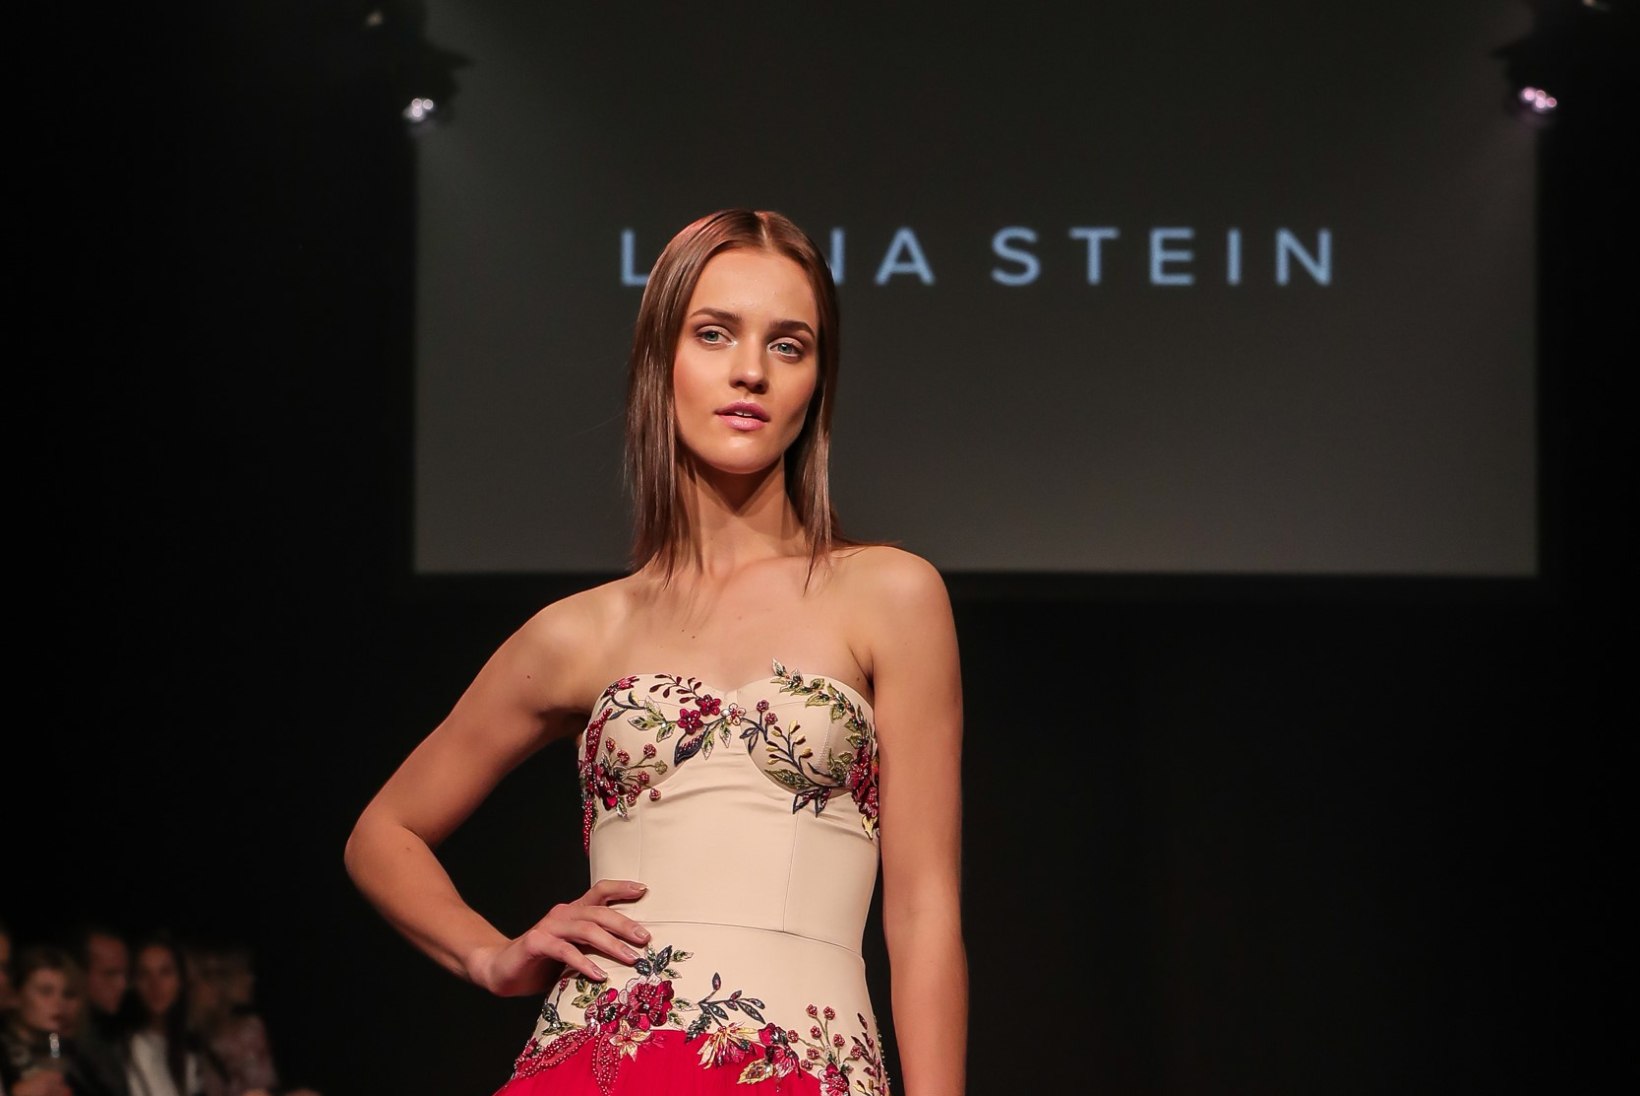 MOEGALERII | Sügisene Tallinn Fashion Week kulmineerus võimsa moespektaakliga